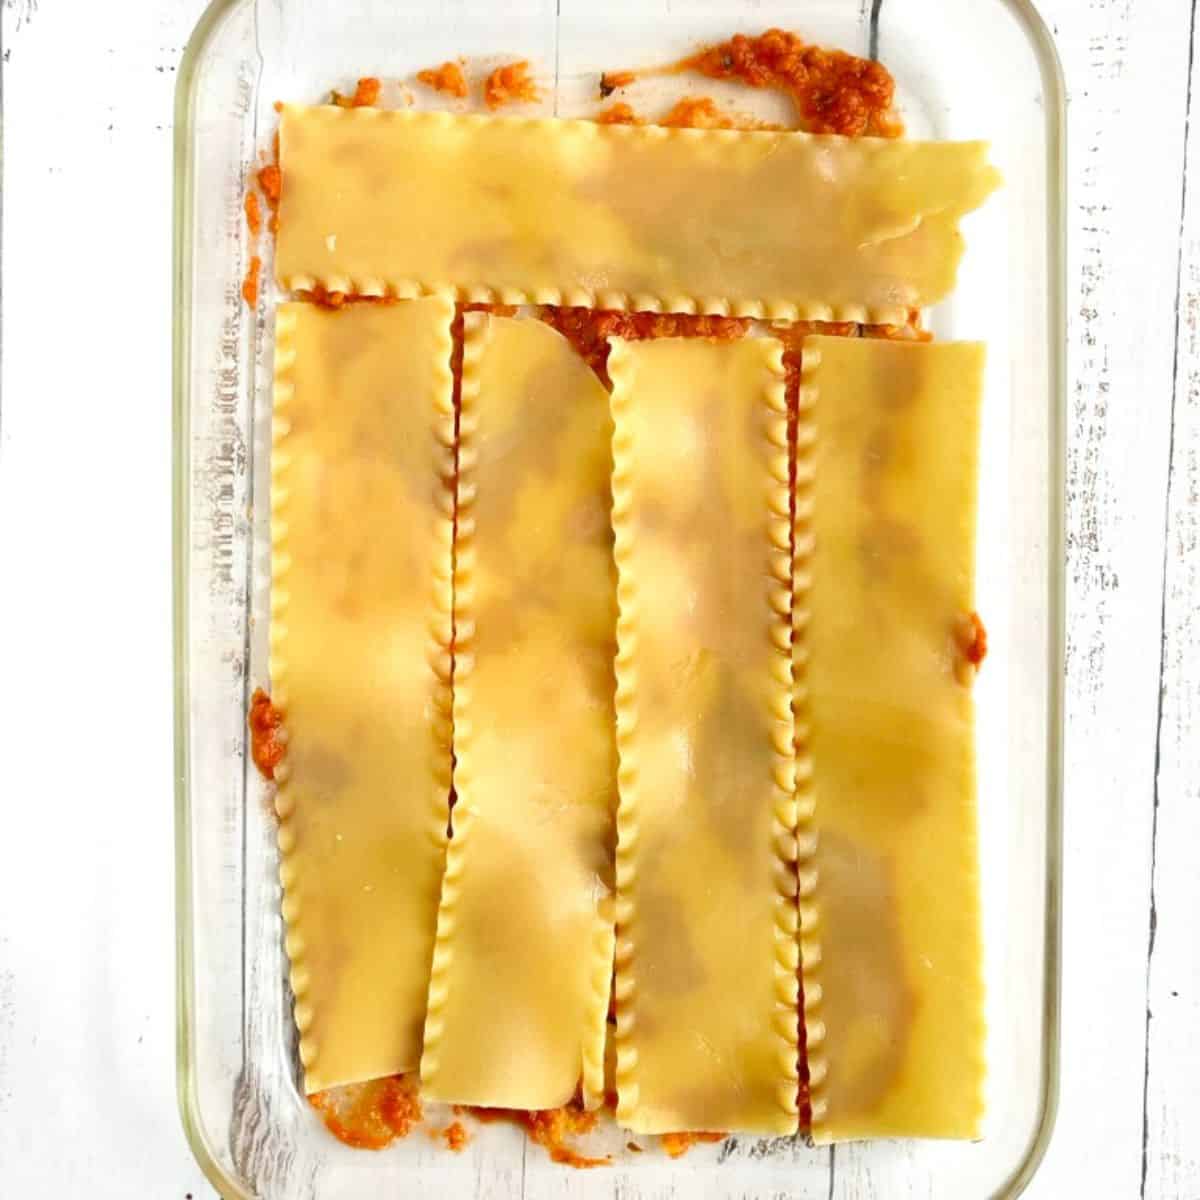 building the lasagna - step 2 placing lasagna noodles on top of marinara sauce